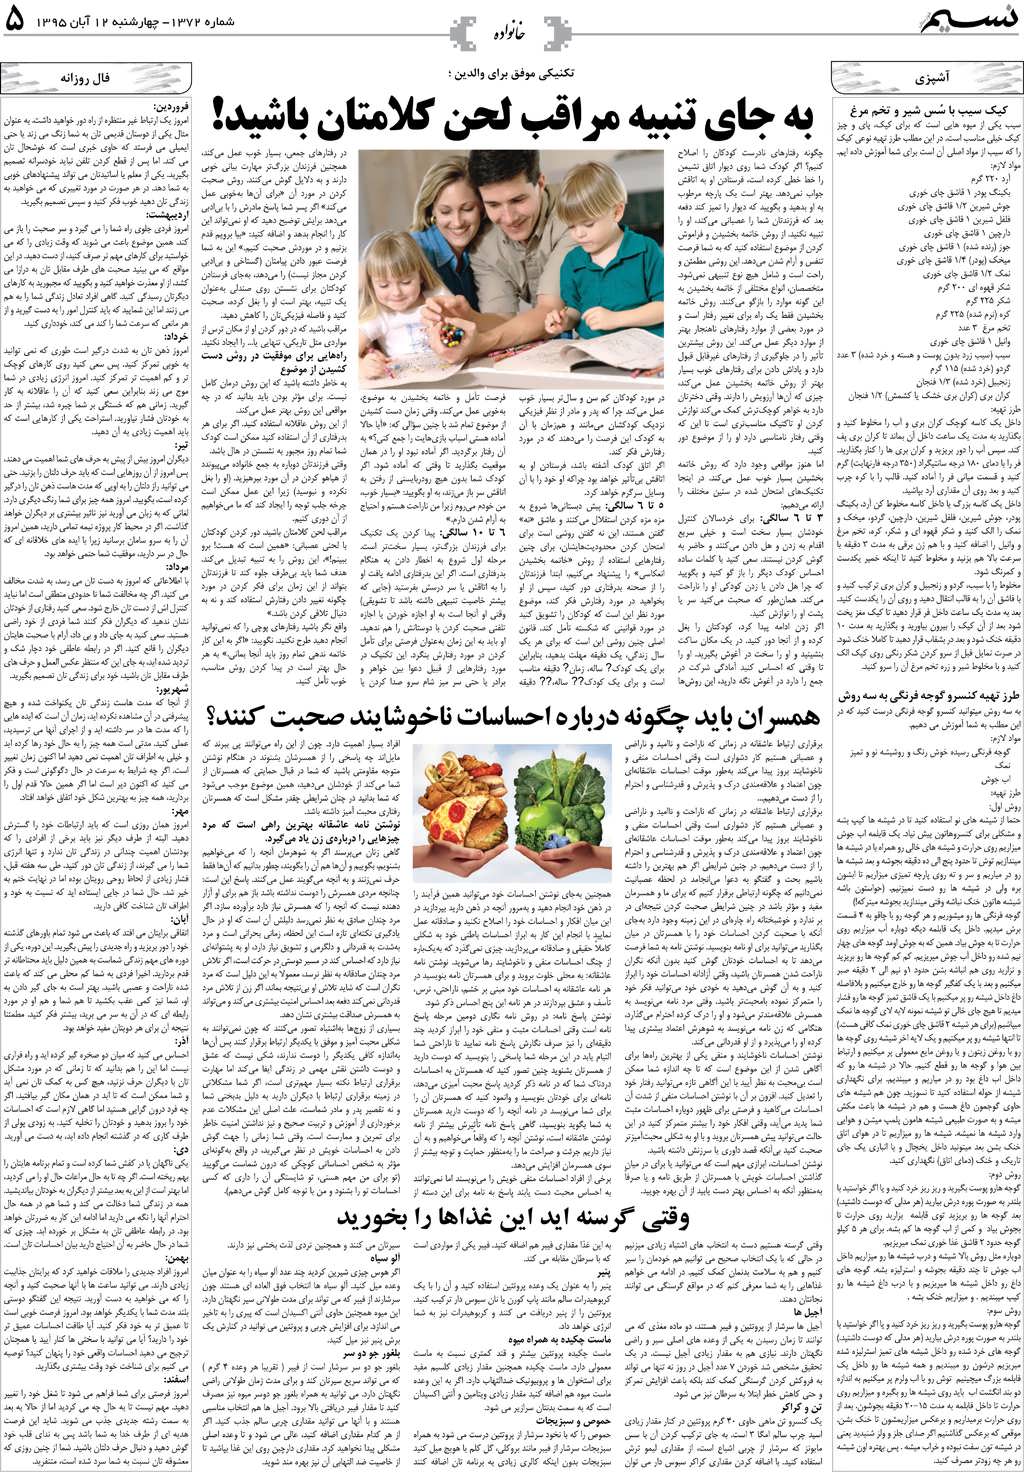 صفحه خانواده روزنامه نسیم شماره 1372